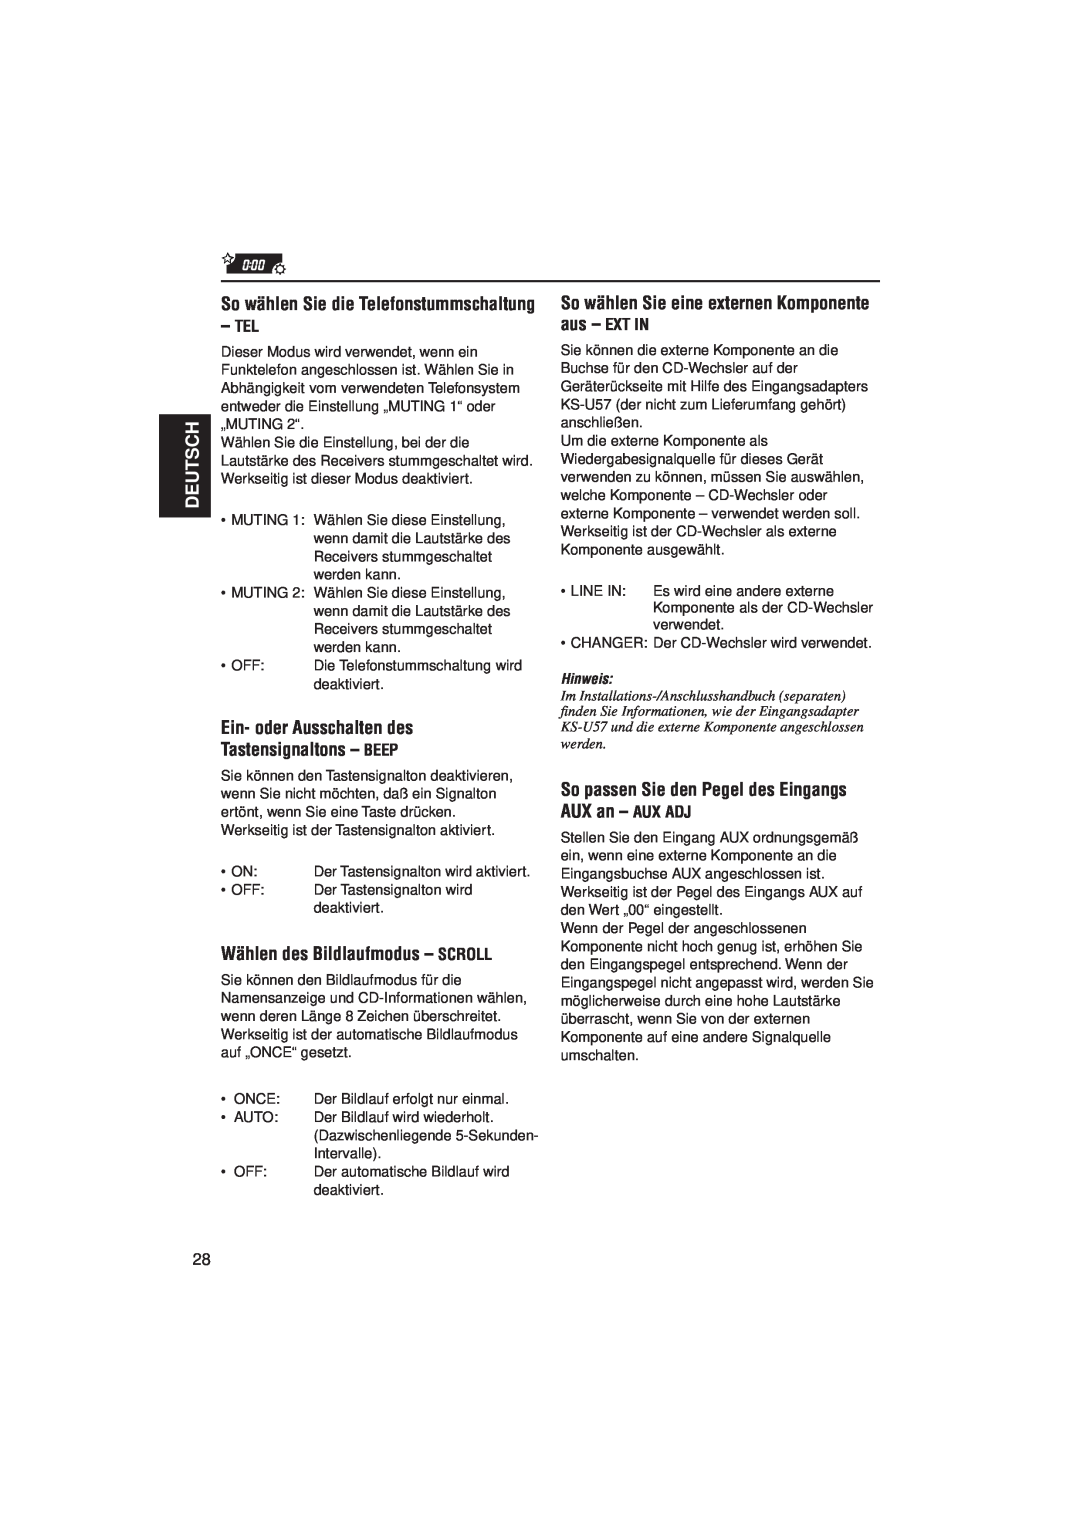 JVC KD-SX921R manual Ein- oder Ausschalten des Tastensignaltons – BEEP, Wählen des Bildlaufmodus – SCROLL, Deutsch, Hinweis 